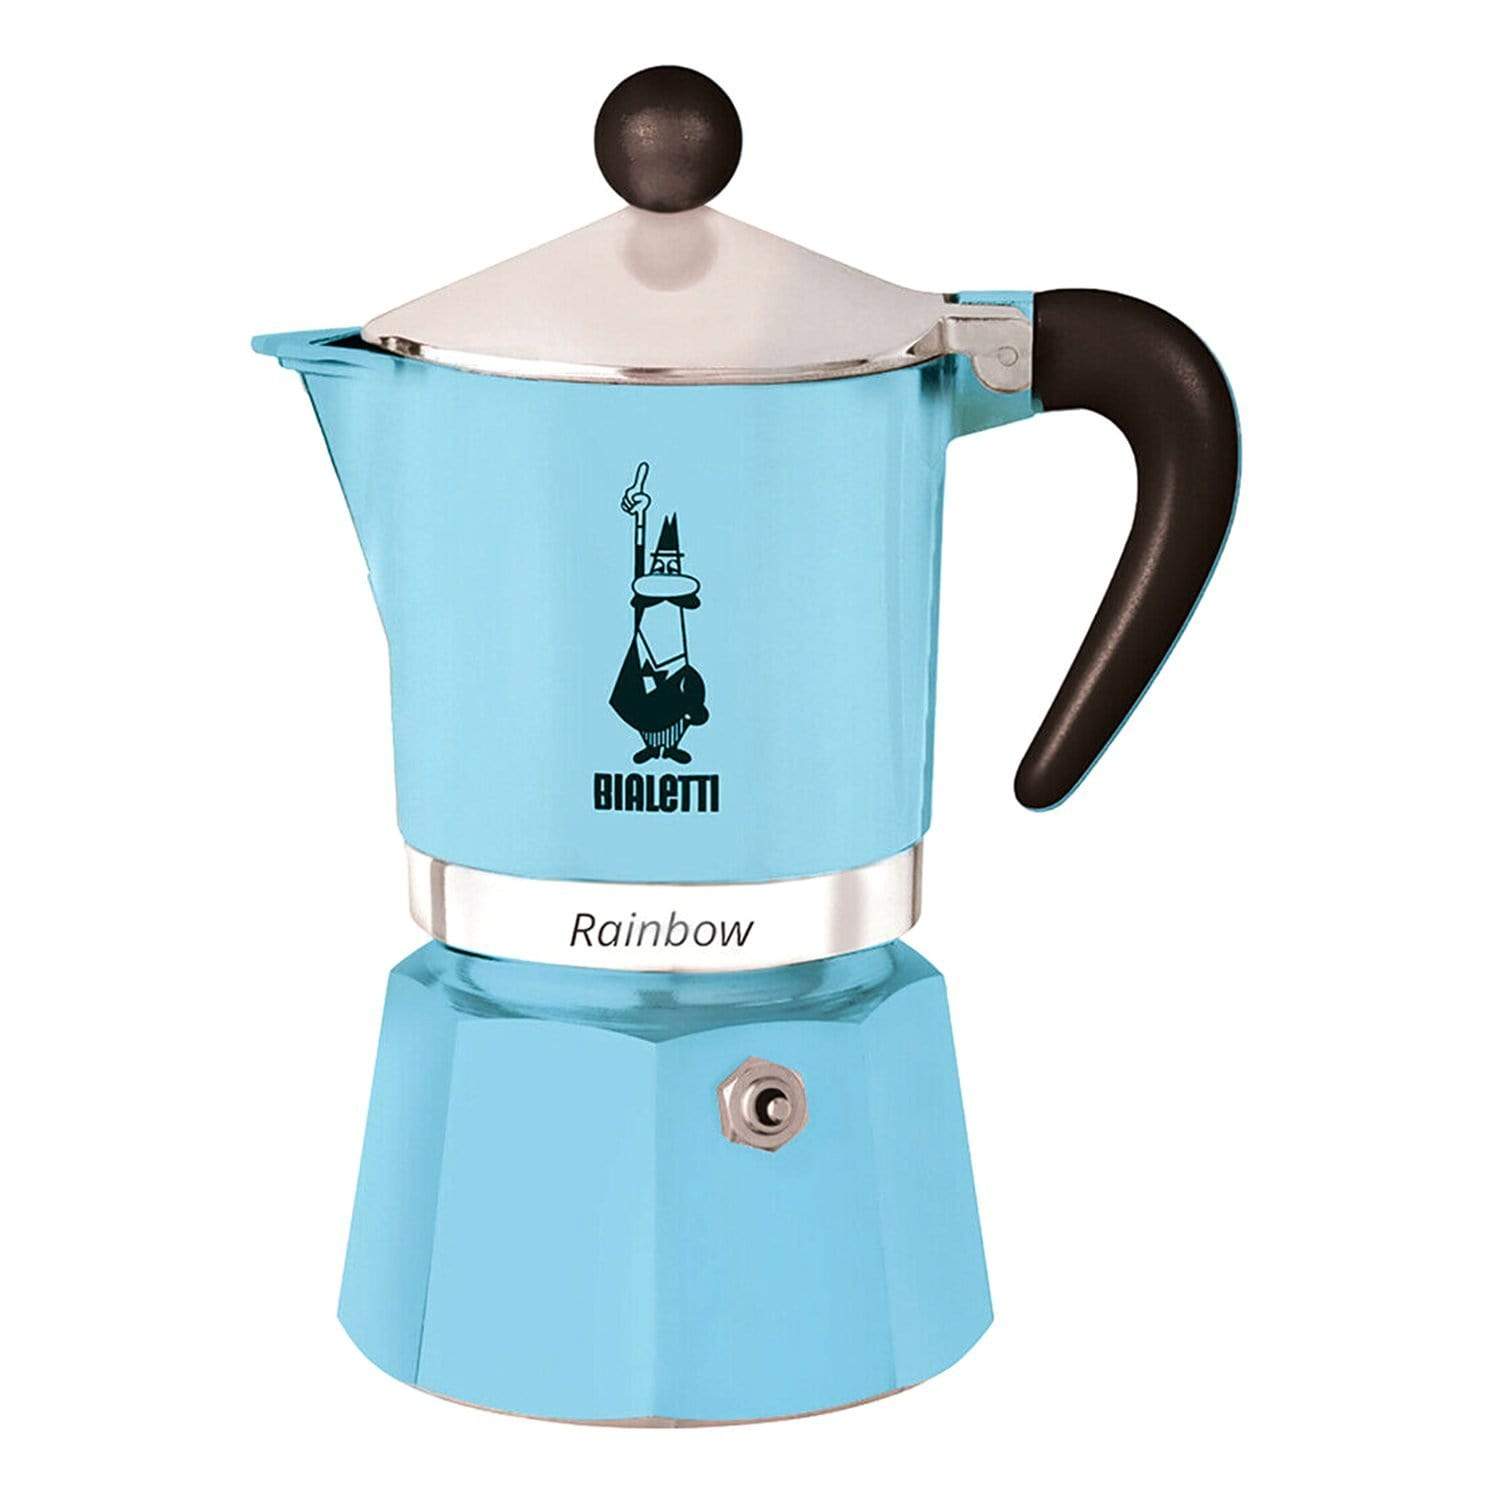 صانعة قهوة بياليتي رينبو - أزرق فاتح، 3 أكواب - 5042 - جاشنمال هوم